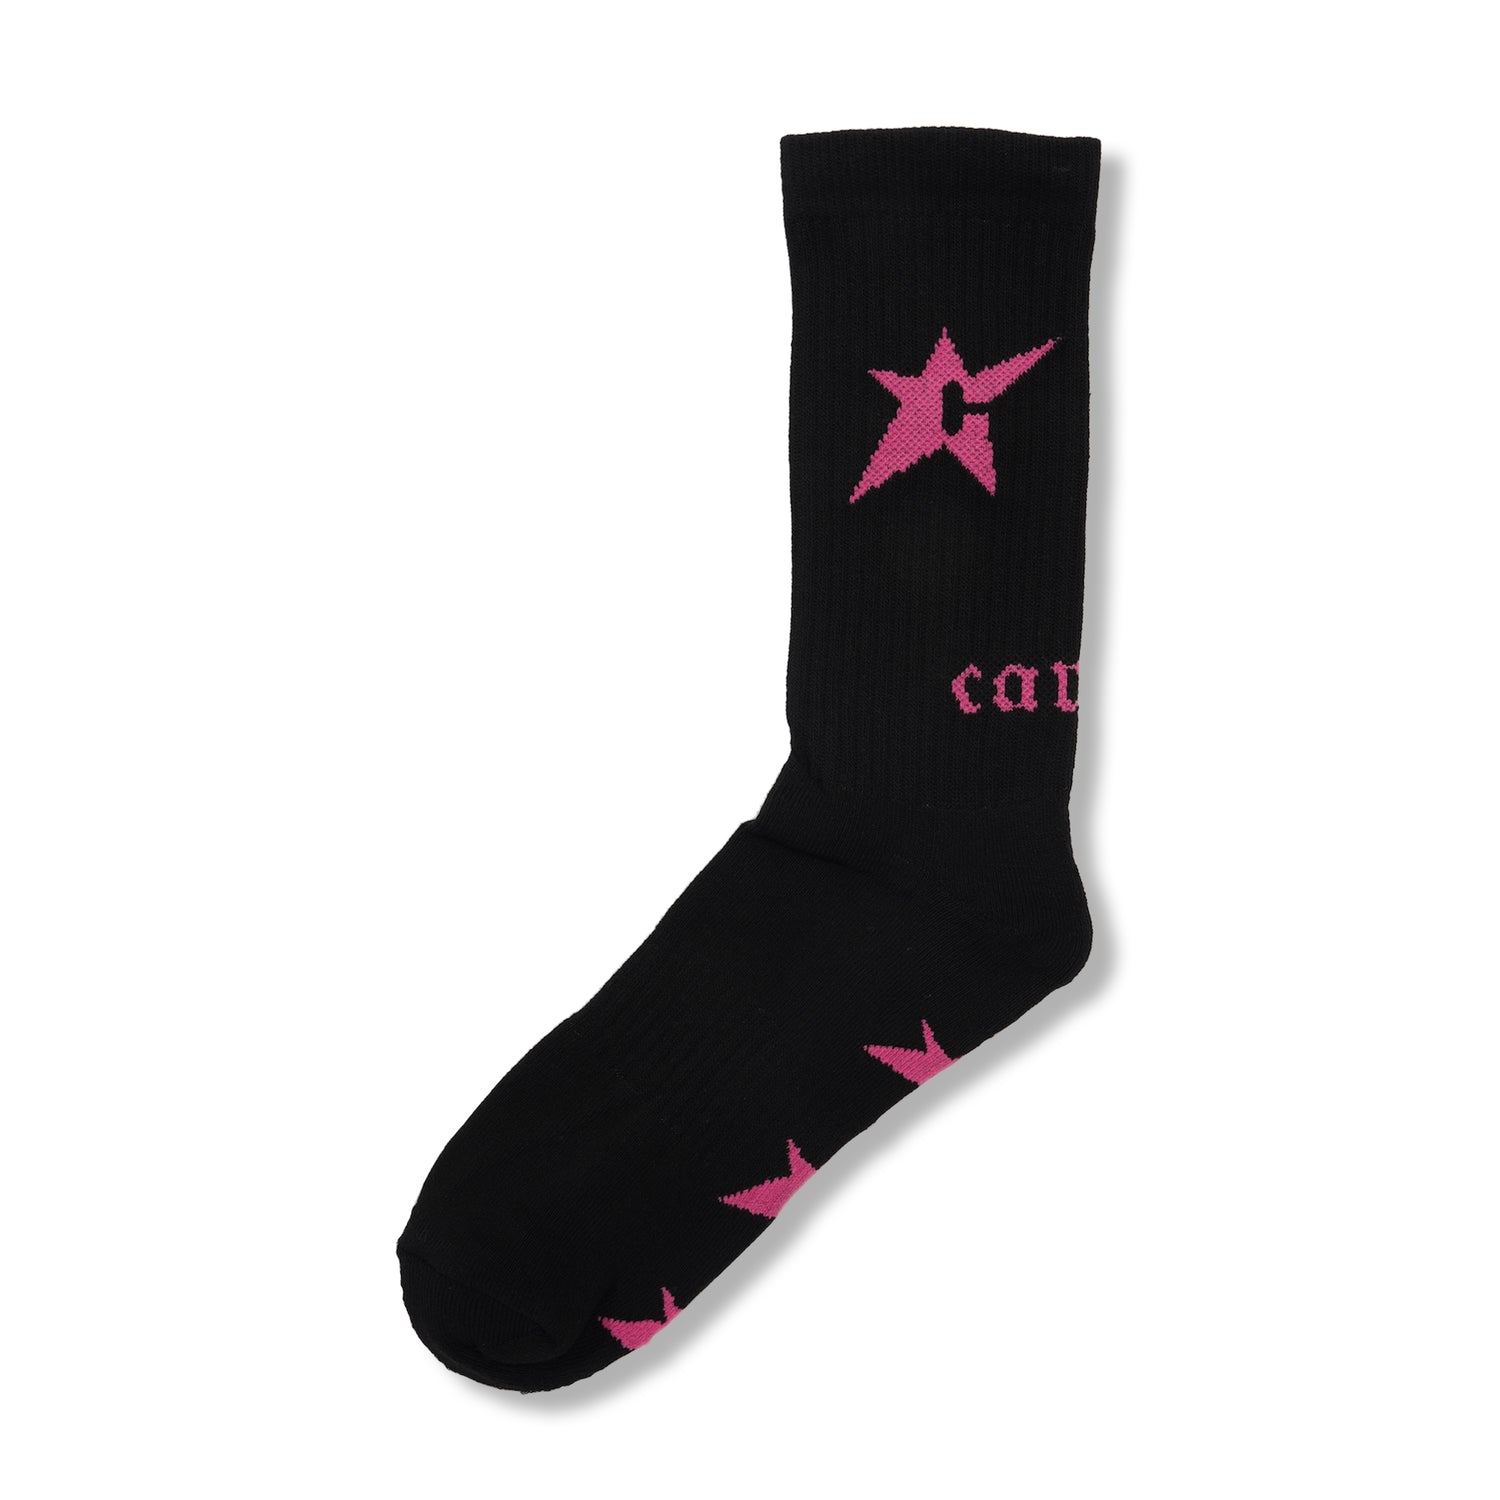 C-Star Sock, Black